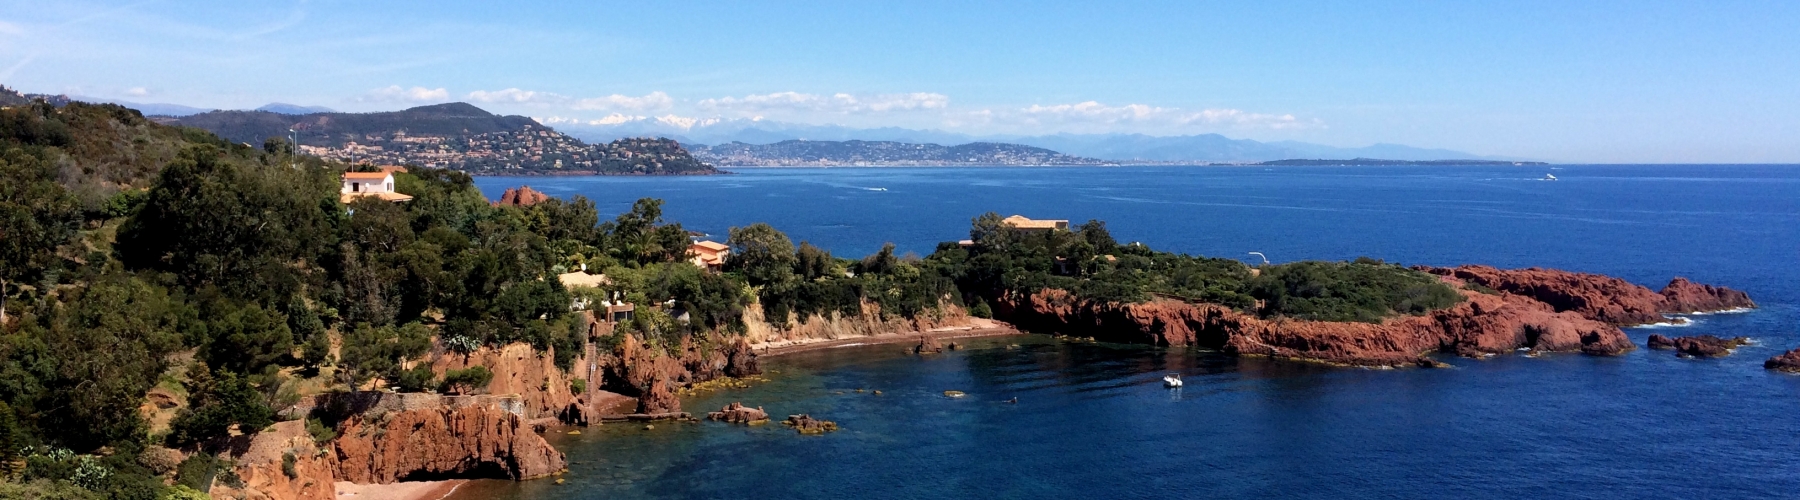 Séminaire Côte d'Azur - L'Estérel en Buggy et Speed Boat